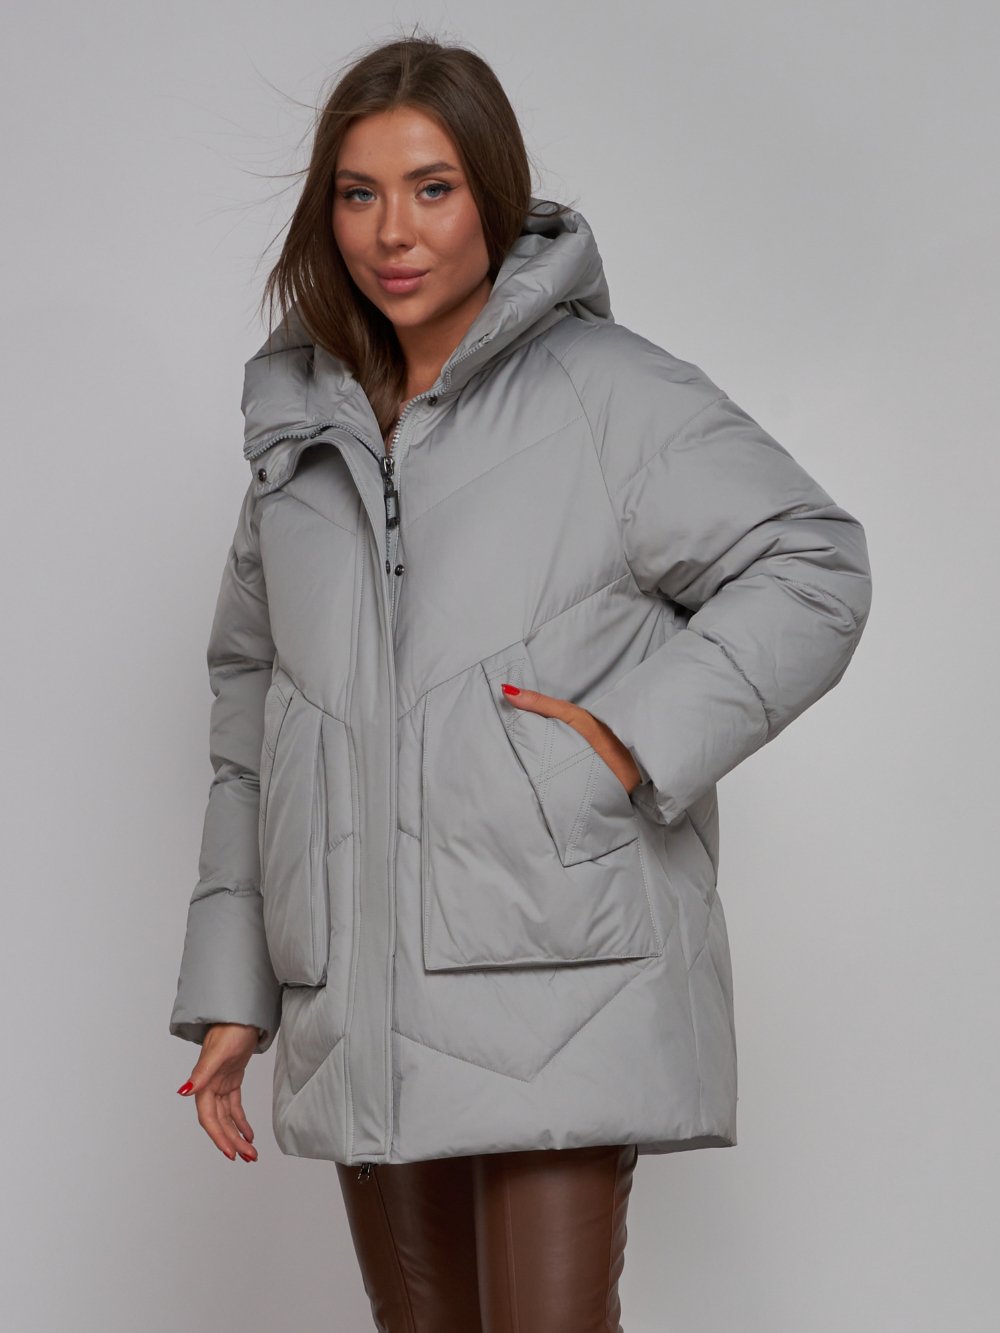 Купить куртку женскую оптом от производителя недорого в Москве 52362SS 1